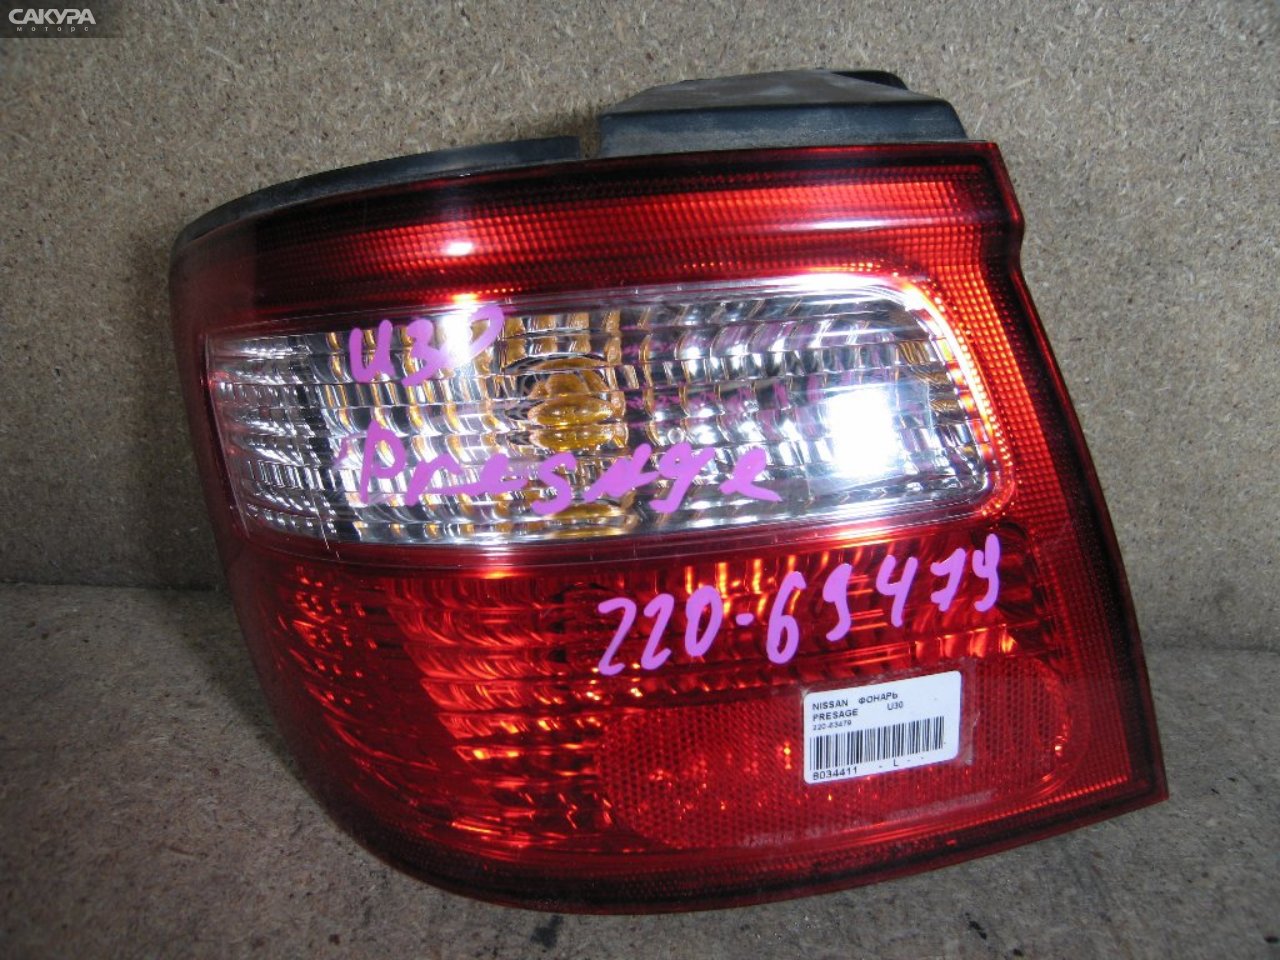 Фонарь стоп-сигнала левый Nissan Presage U30 220-63479: купить в Сакура Абакан.